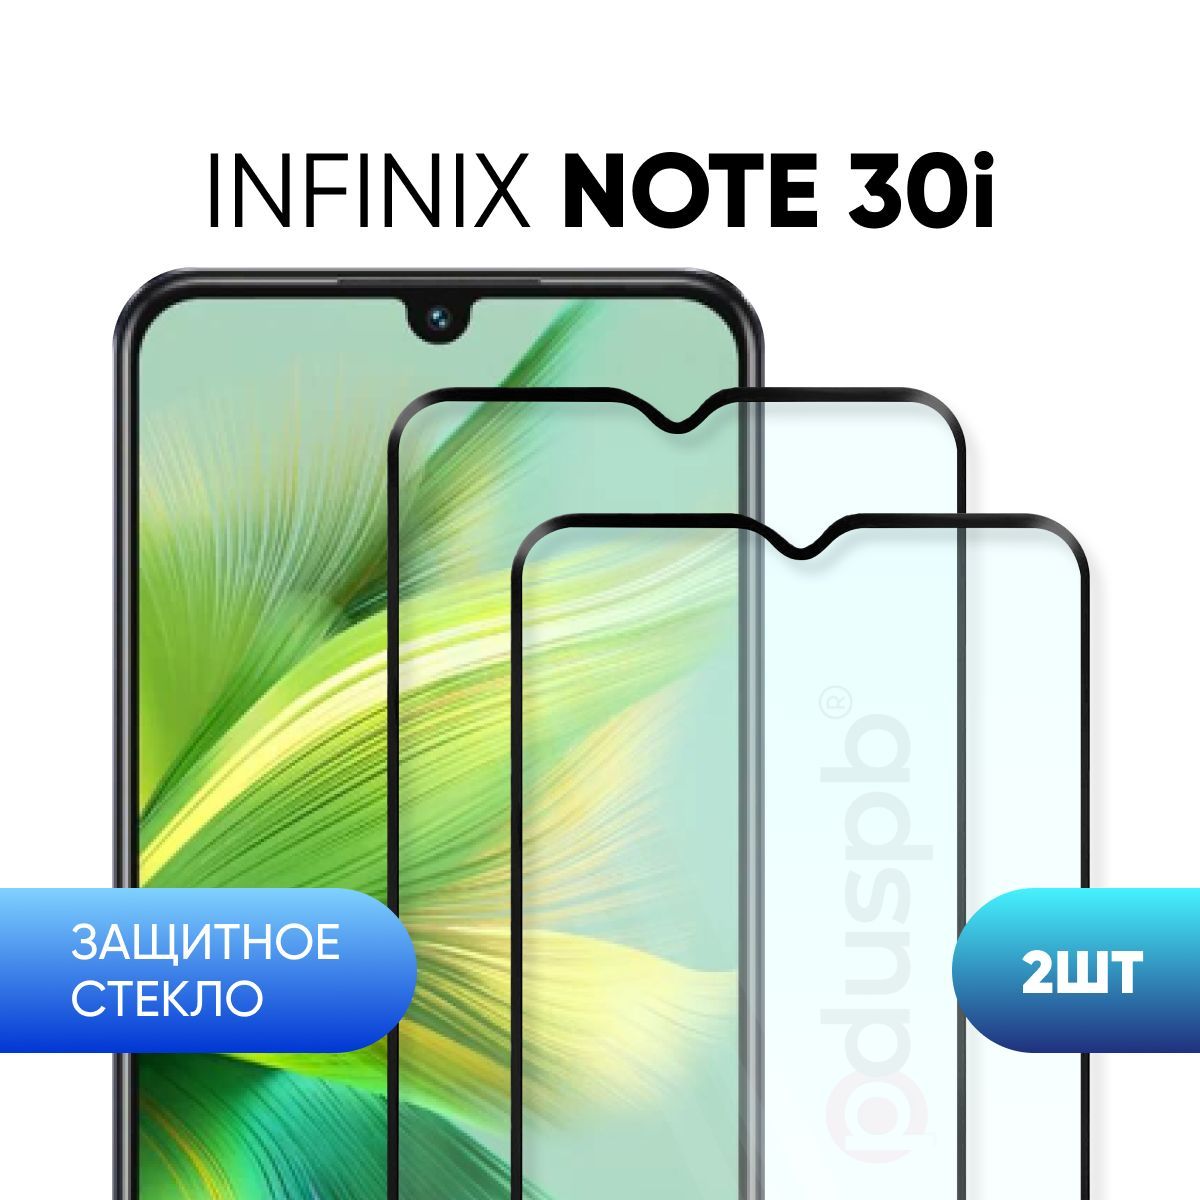 Infinix note 30 характеристики